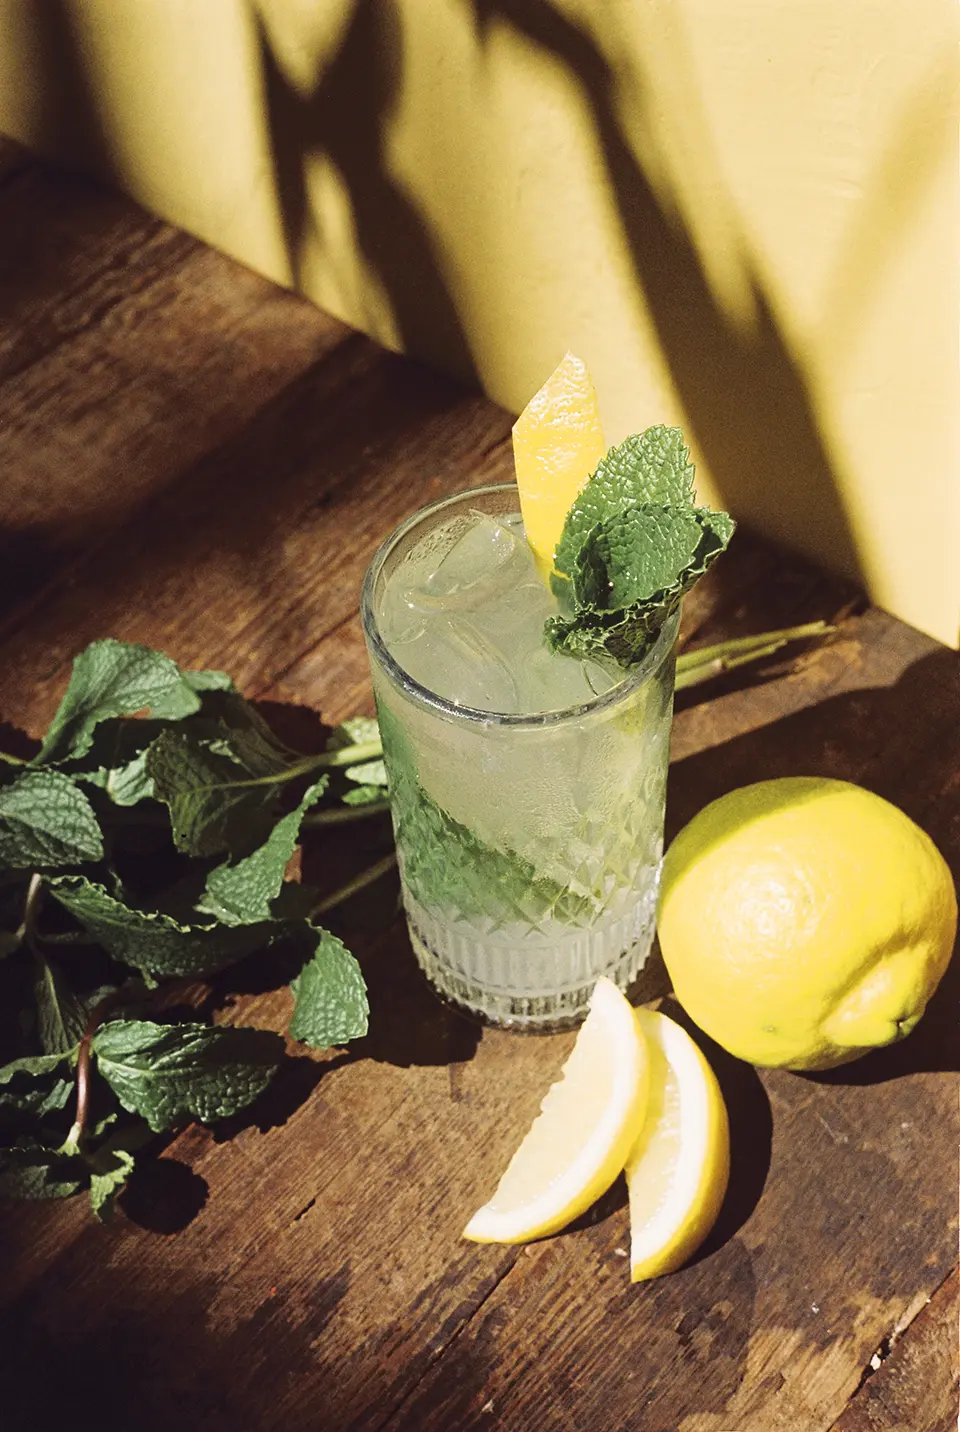 Um copo sobre uma superfície de madeira escura. O copo está cheio de um drink verde bem claro, com gelo, folhas de hotelã e um zest de limão siliano. Ao redor do copo há ramos de hortelã e um limão siciliano.